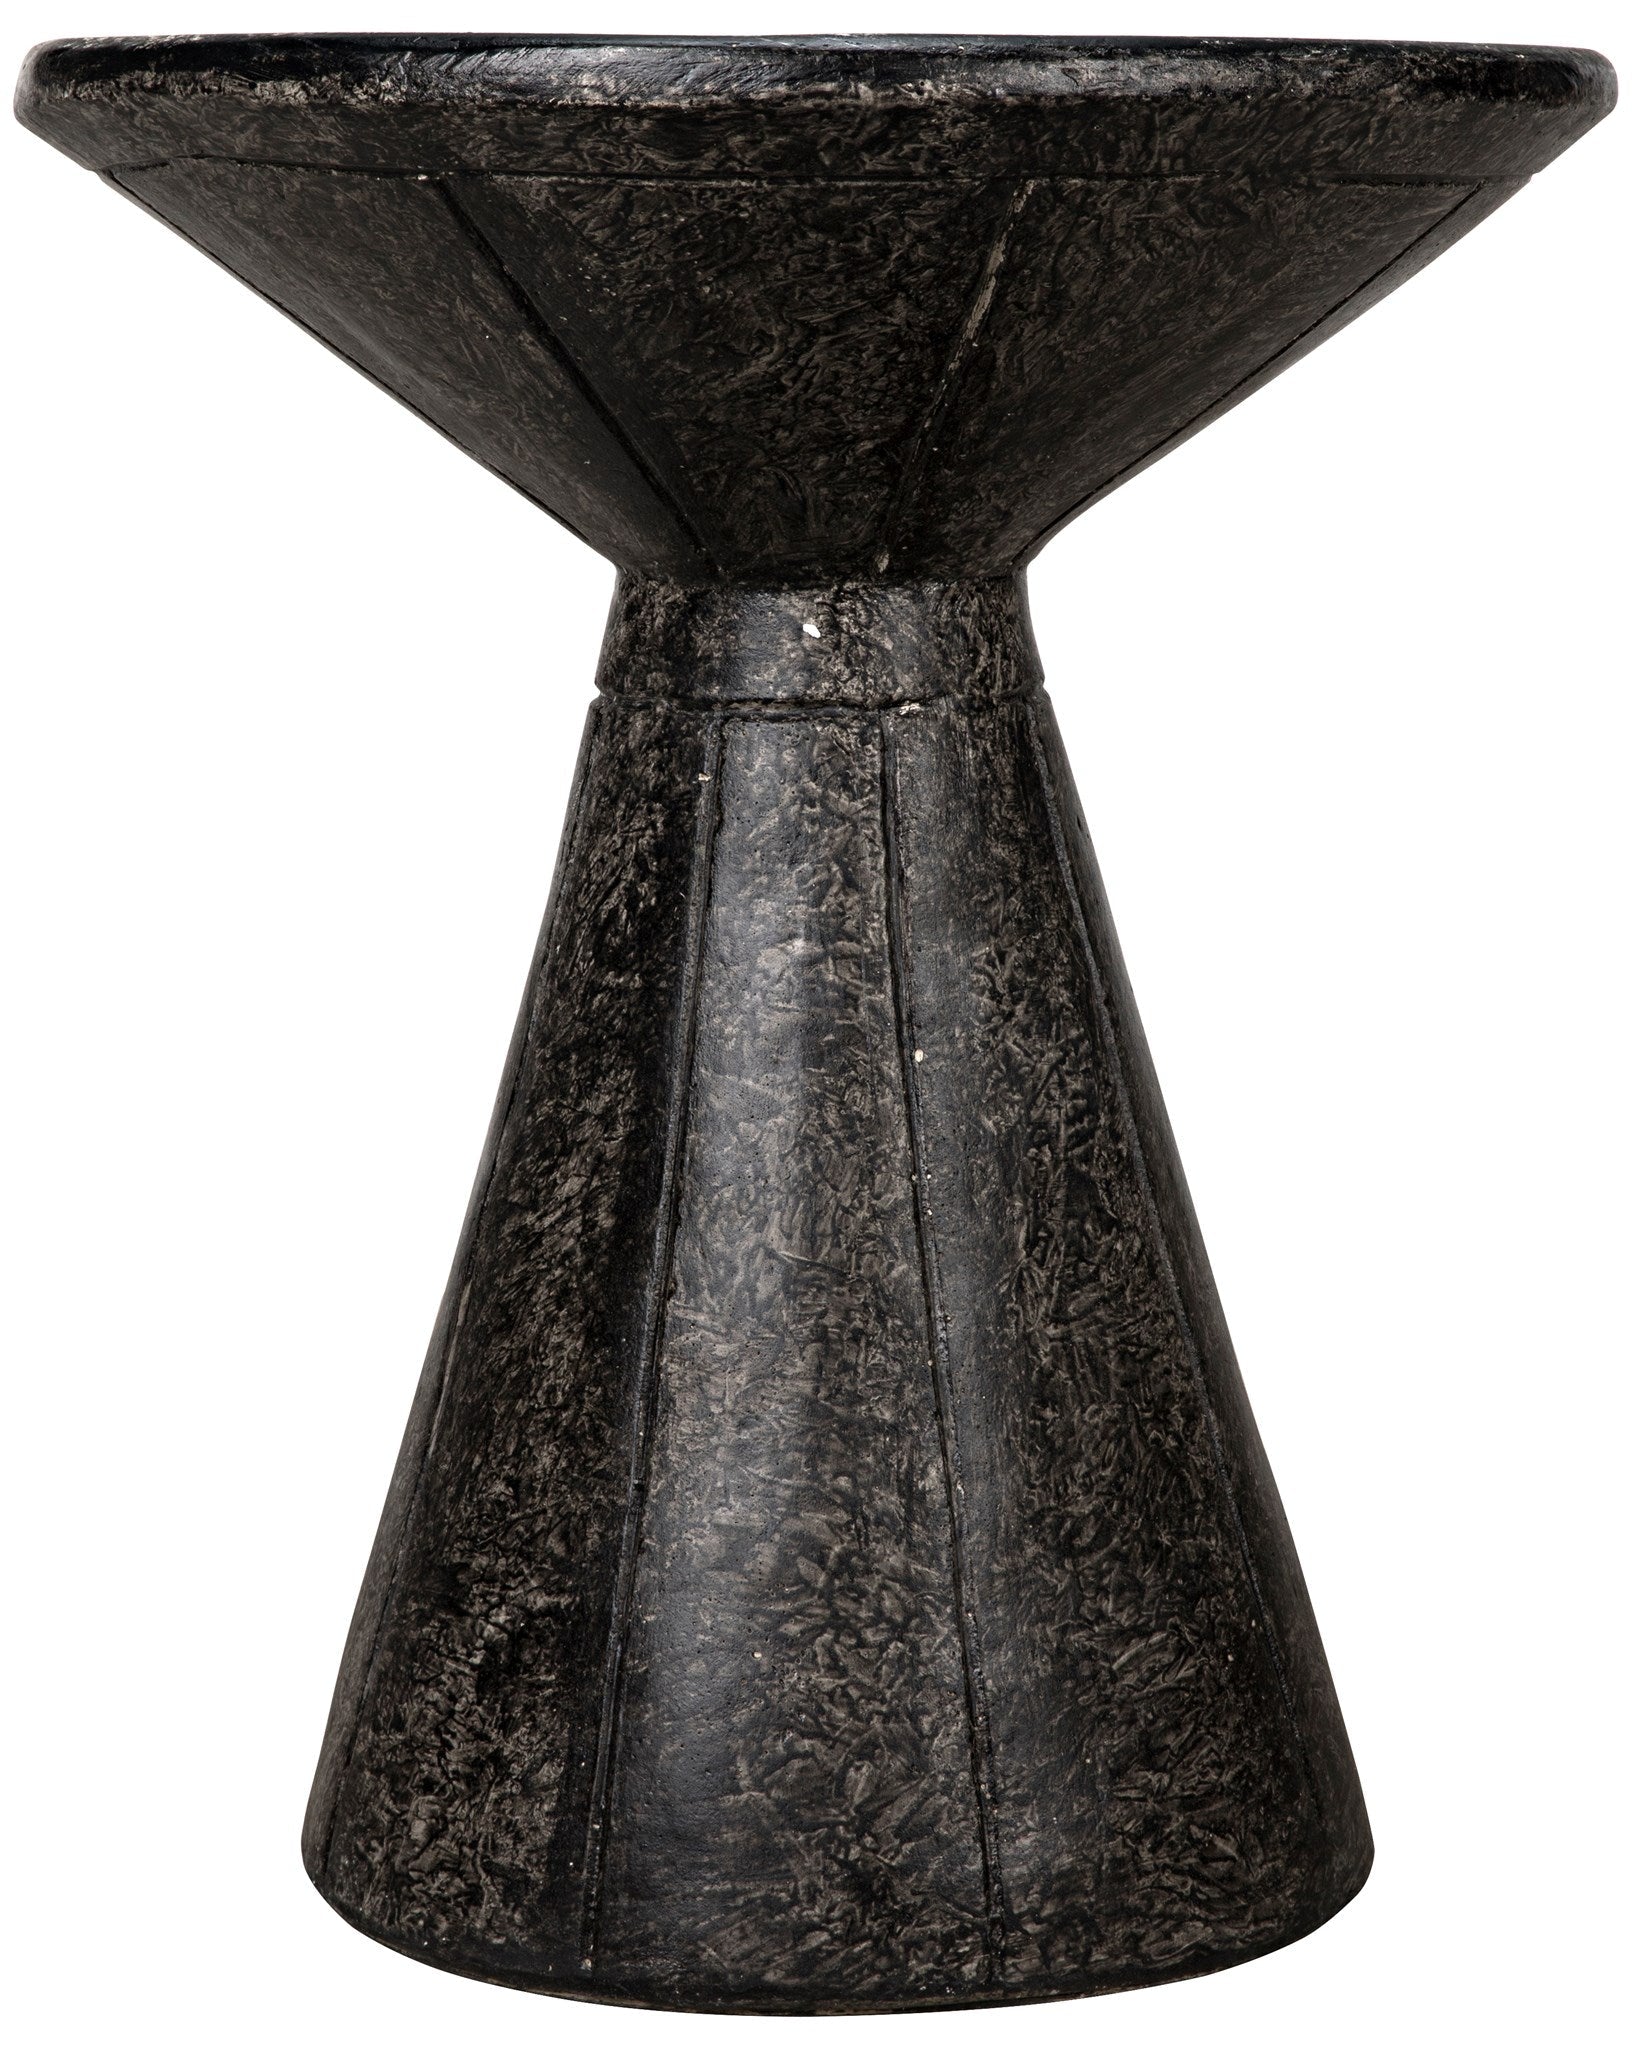 Pedestal Side Table, Black Fiber Cement - Furniture - Tipplergoods